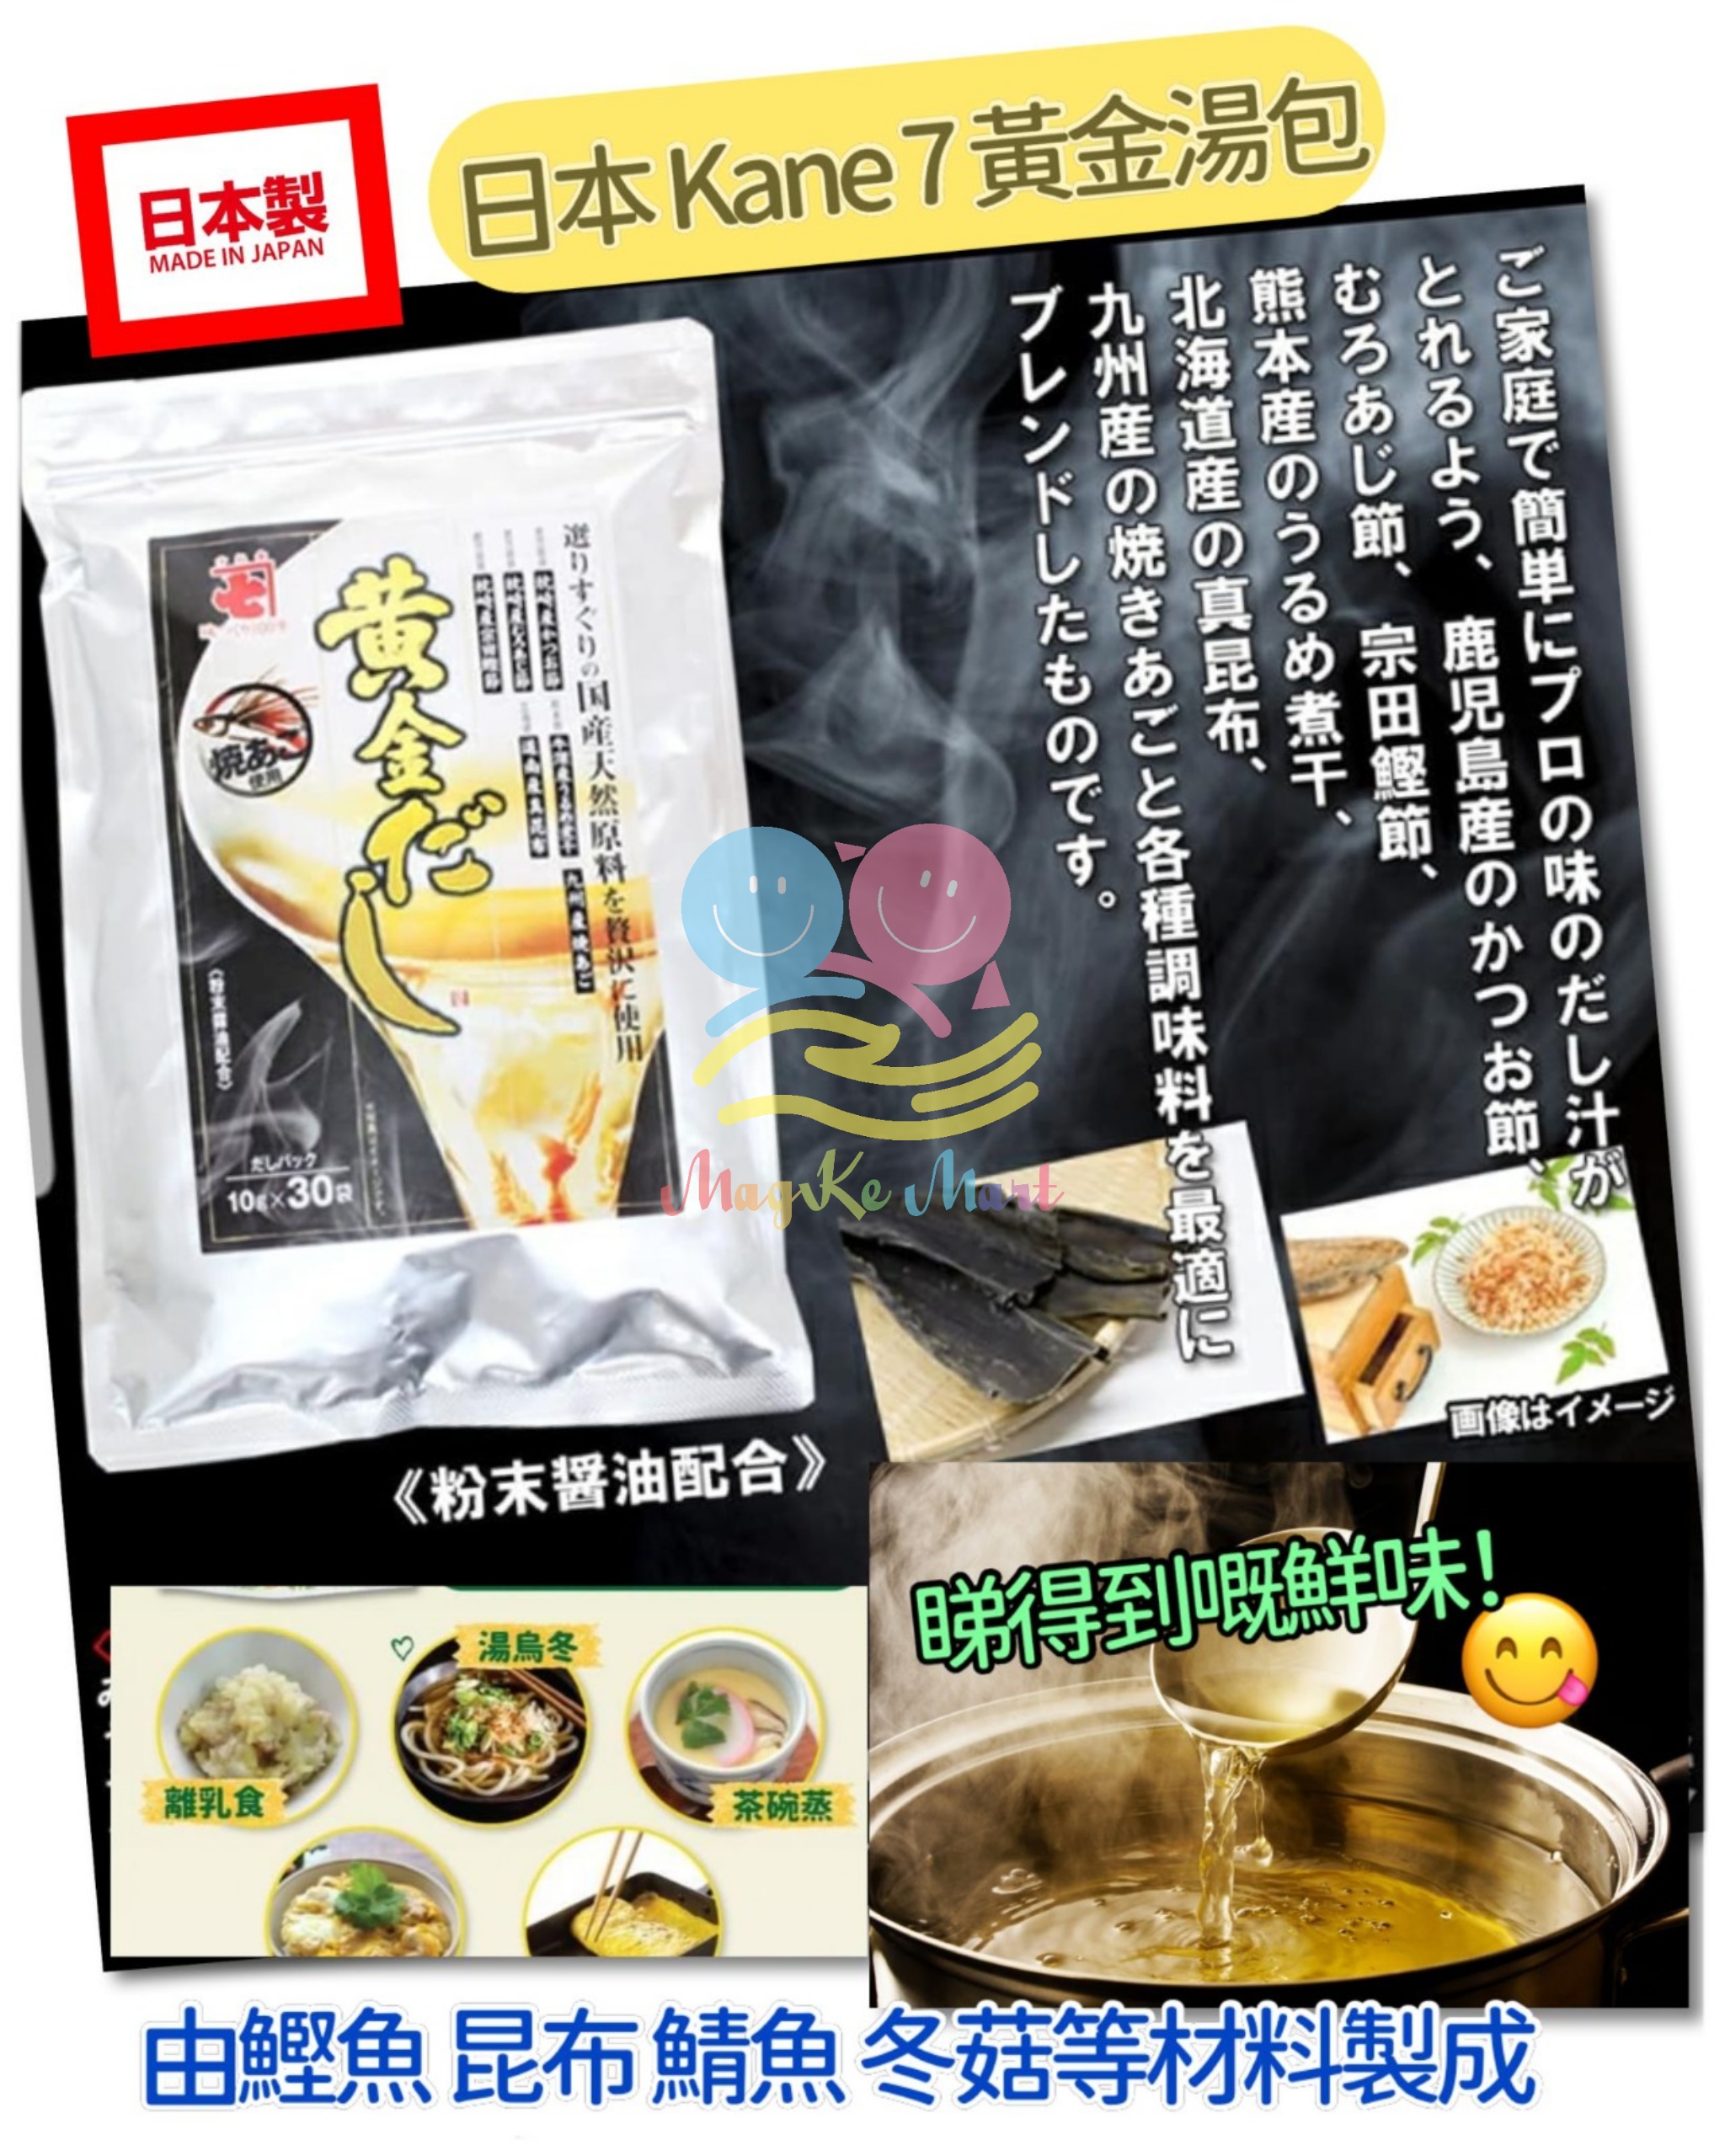 日本 KANE 7 鰹魚昆布黃金湯包(1袋30包)